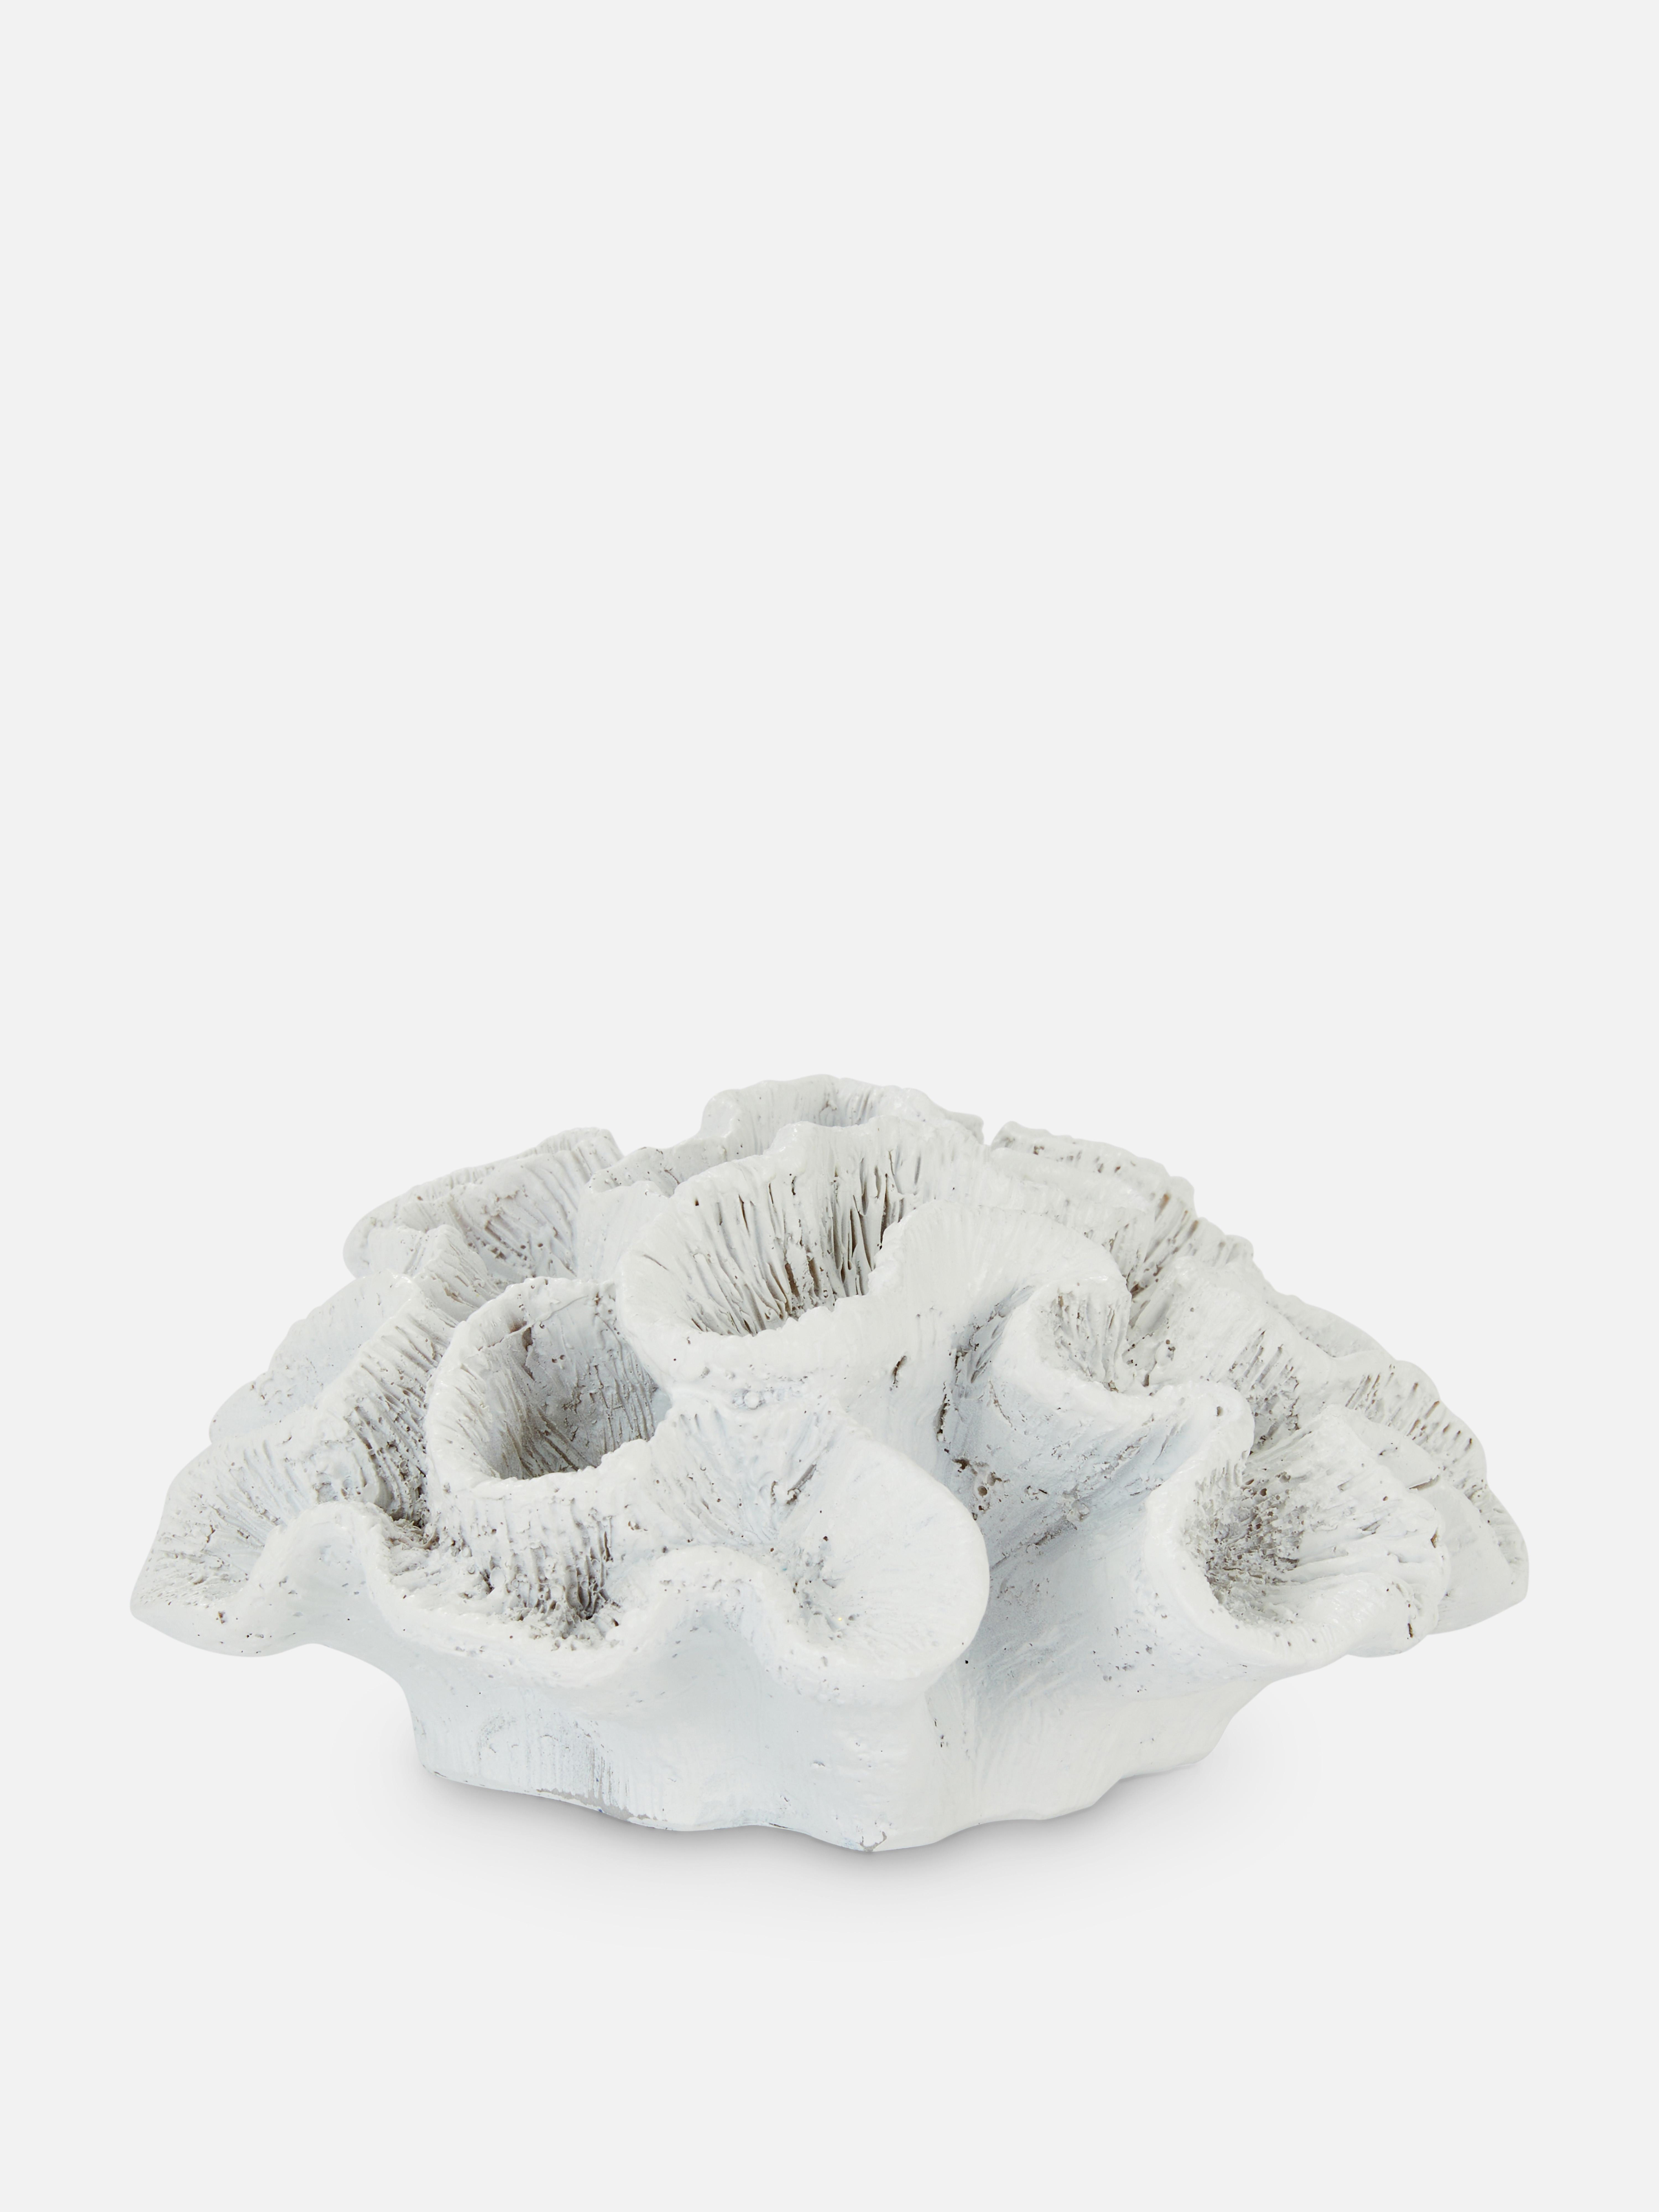 Ceramic Coral Ornament